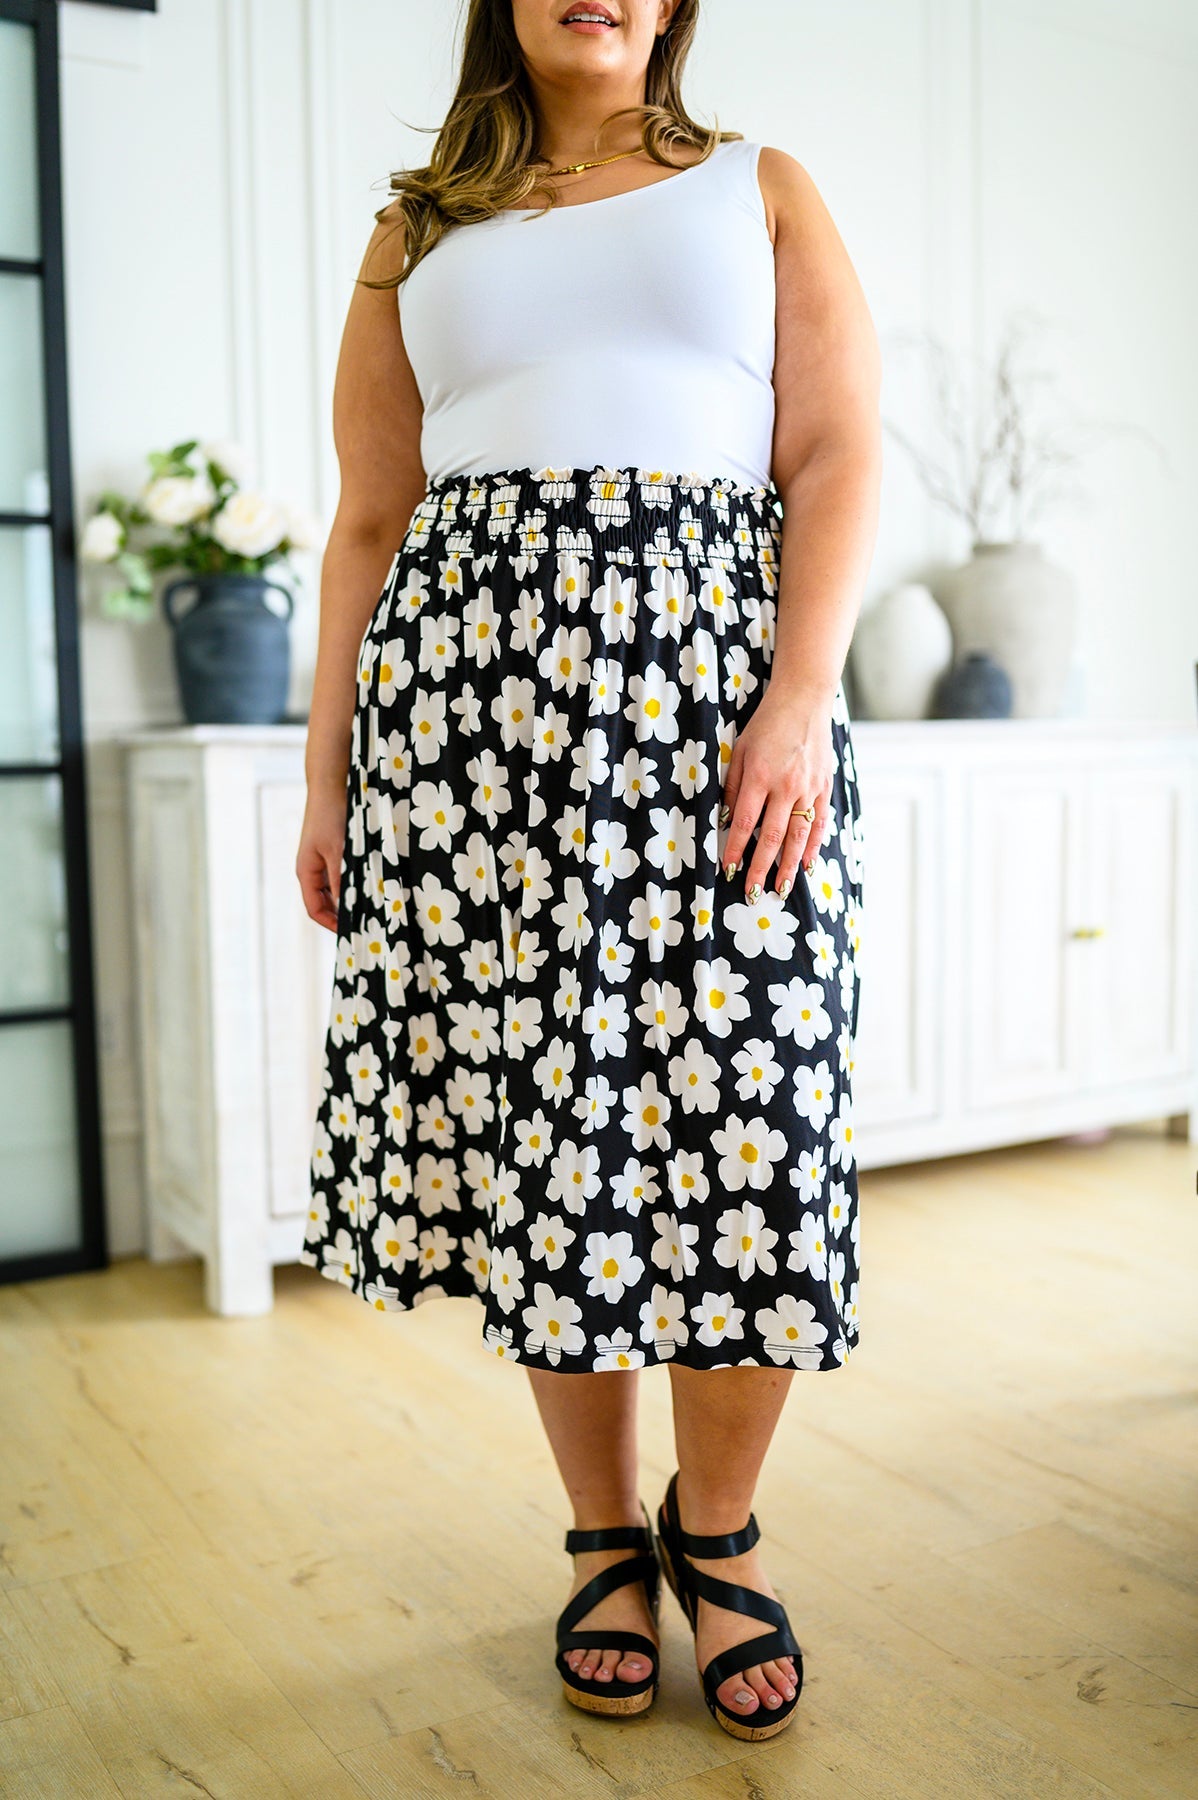 お得在庫baybee daisy jacquard skirt Mサイズ スカート